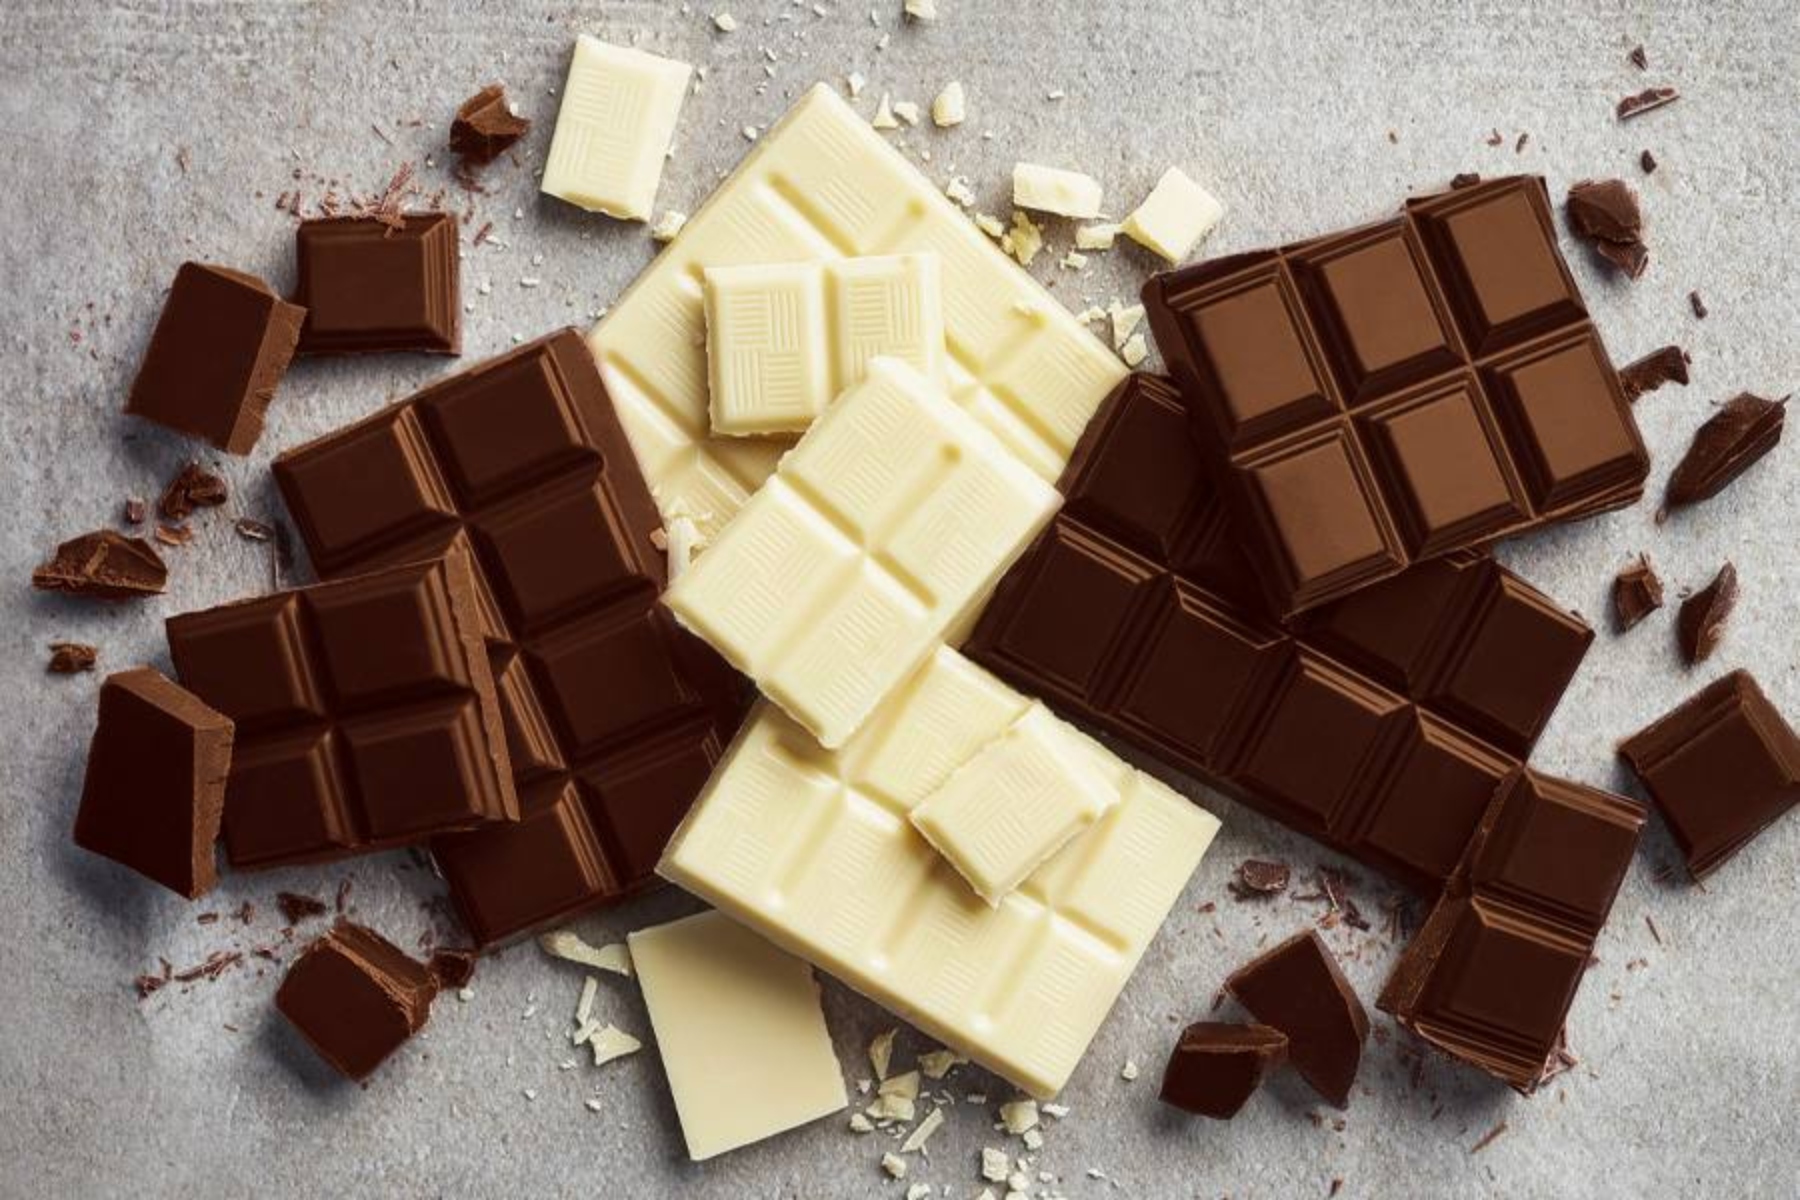 Μαύρη λευκή σοκολάτα: Η μαύρη ή η λευκή σοκολάτα είναι η πιο υγιεινή;